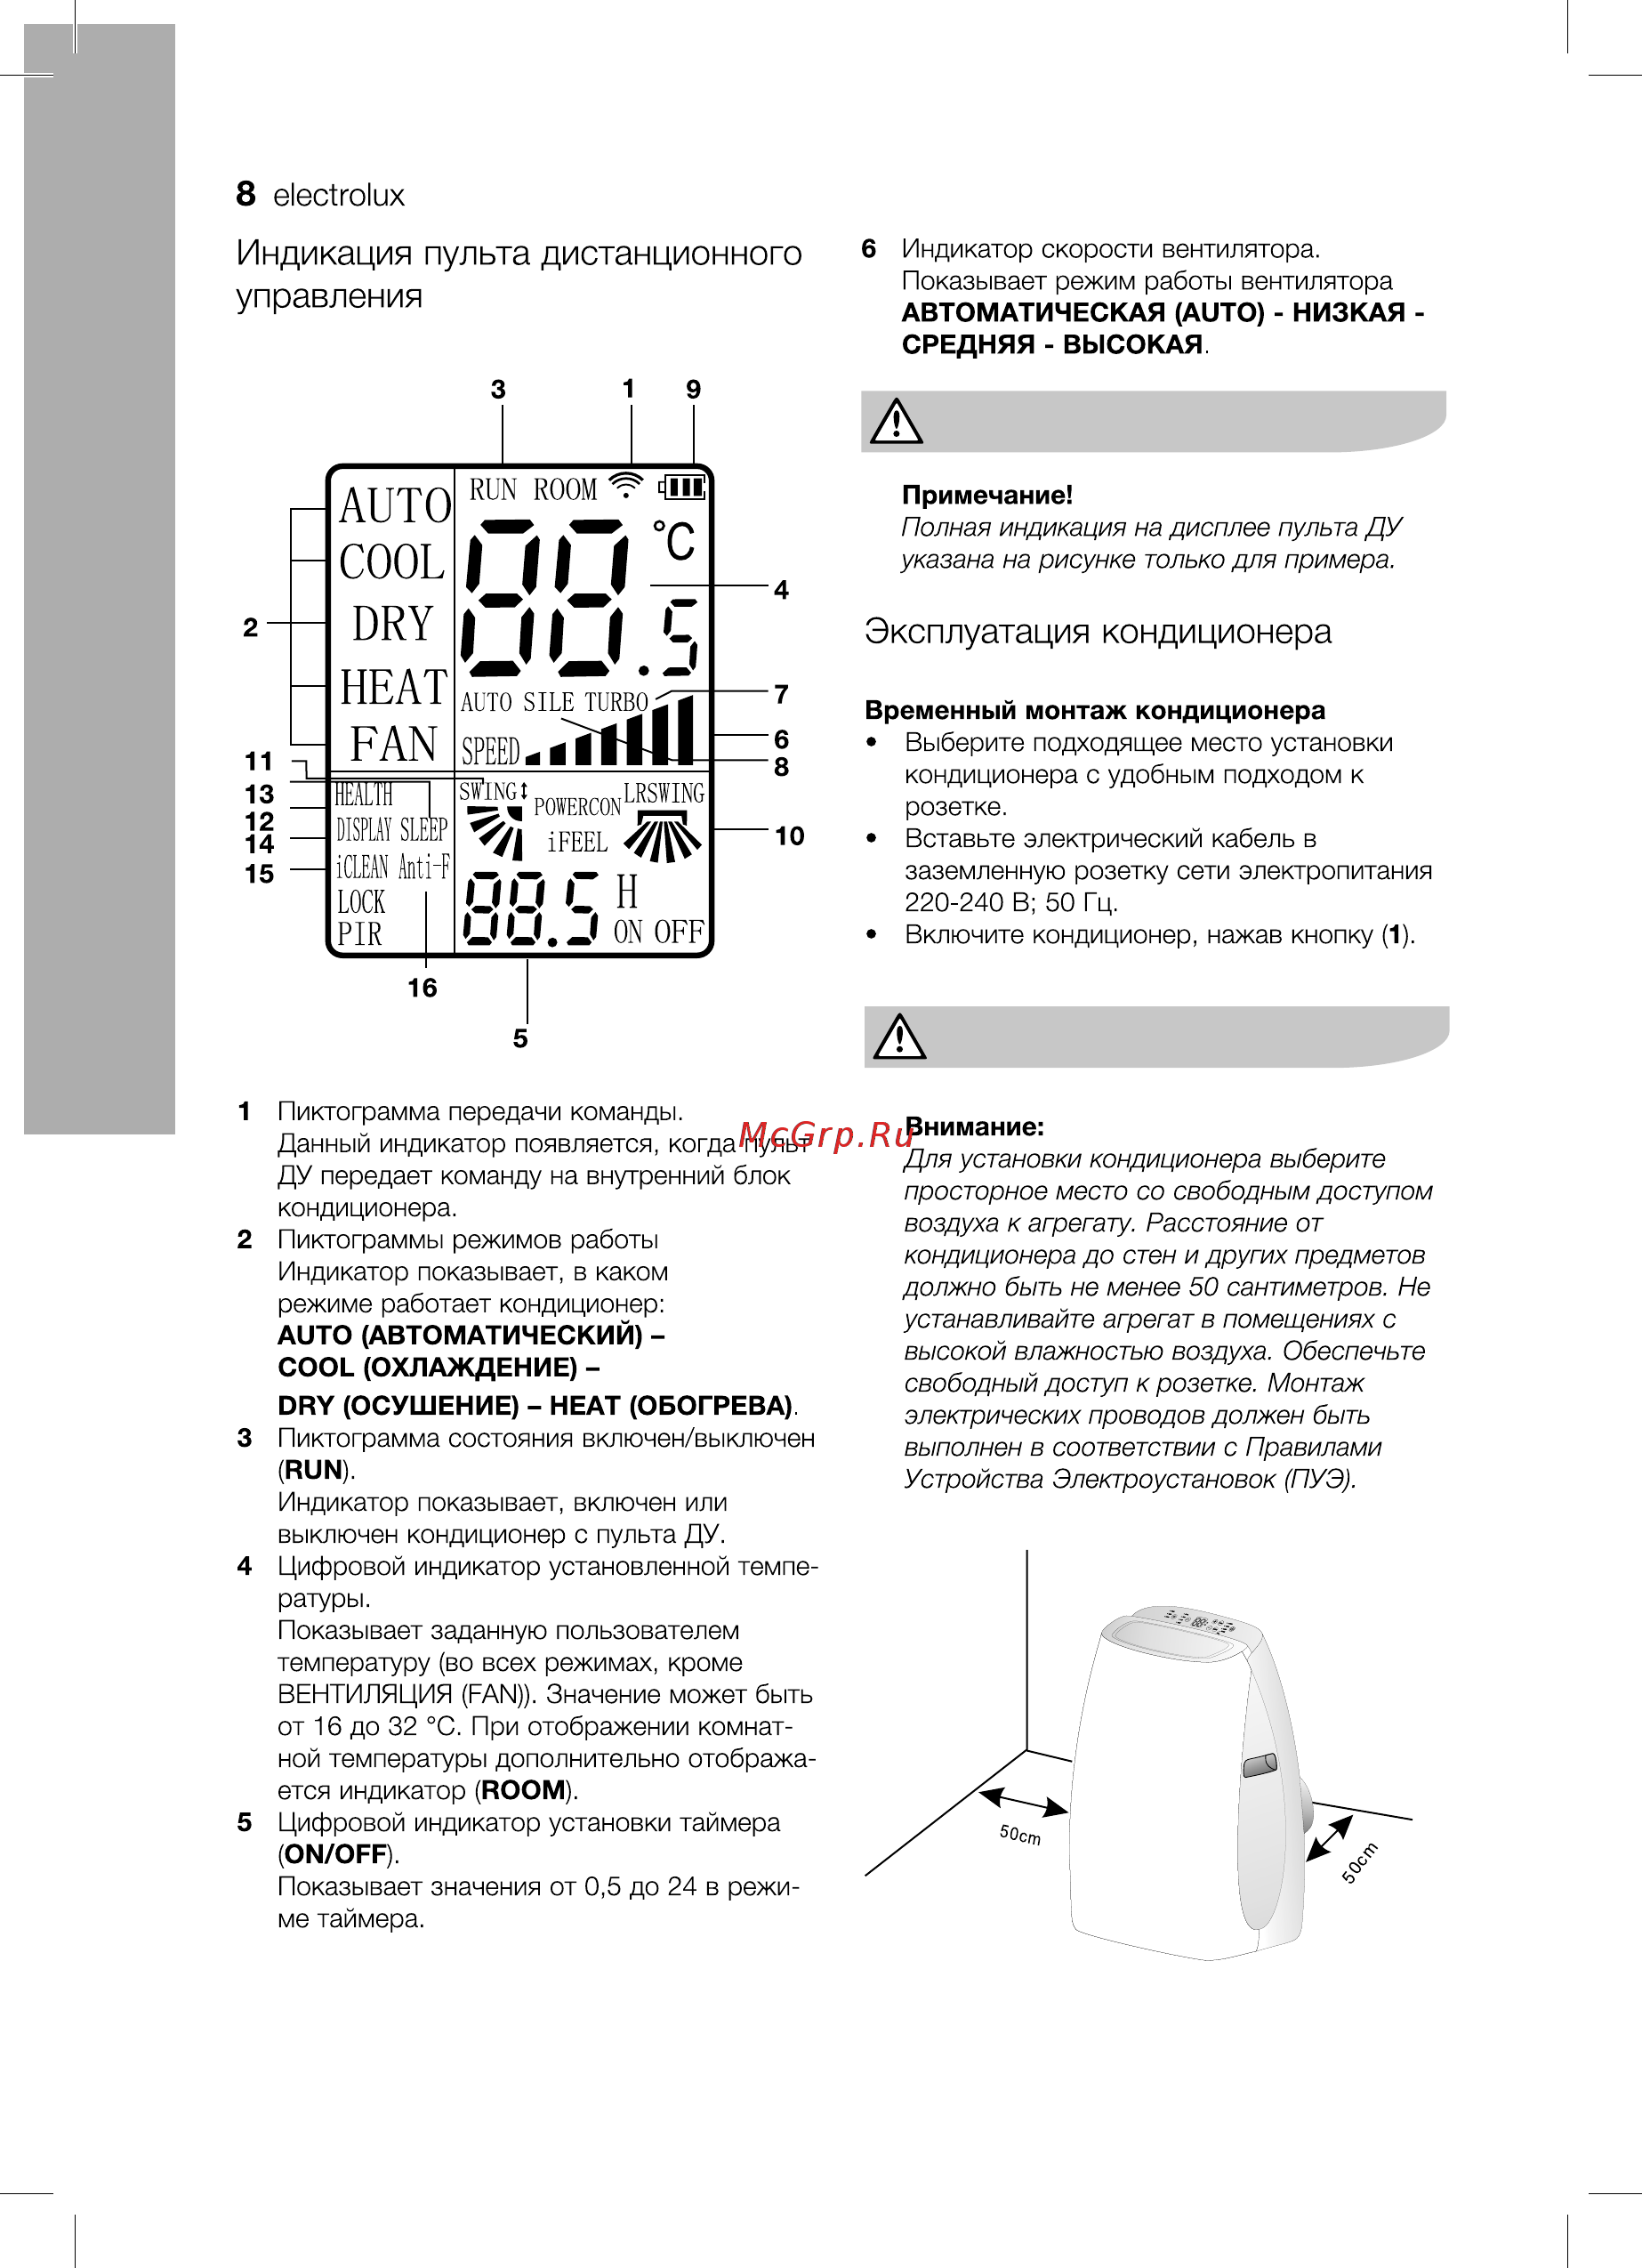 Кондиционеры electrolux (электролюкс): инструкция к напольным моделям